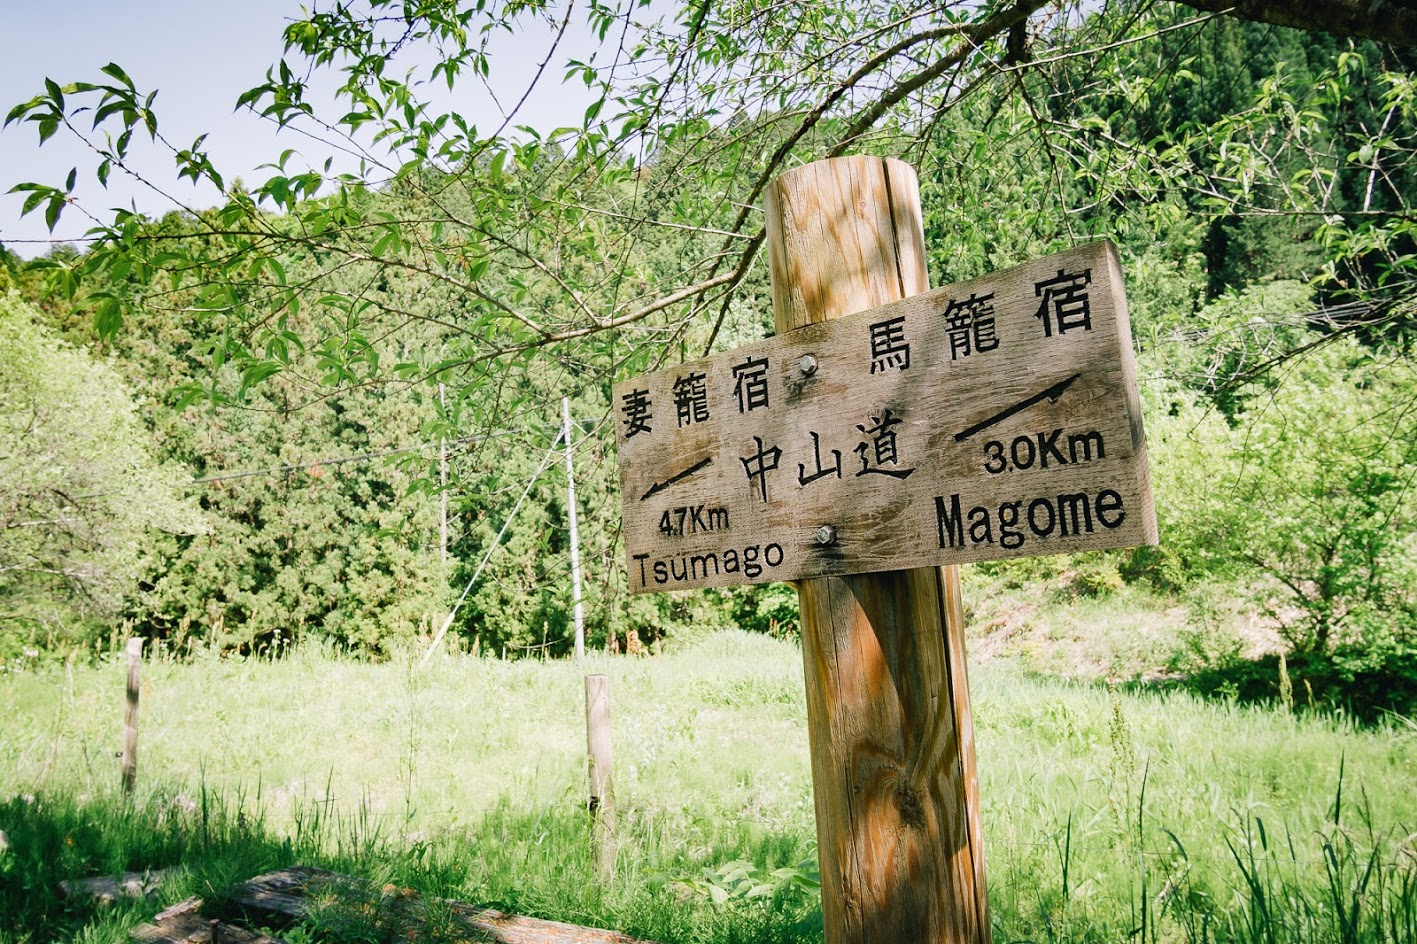 เดินป่าญี่ปุ่น : จาก Magome ถึง Tsumago